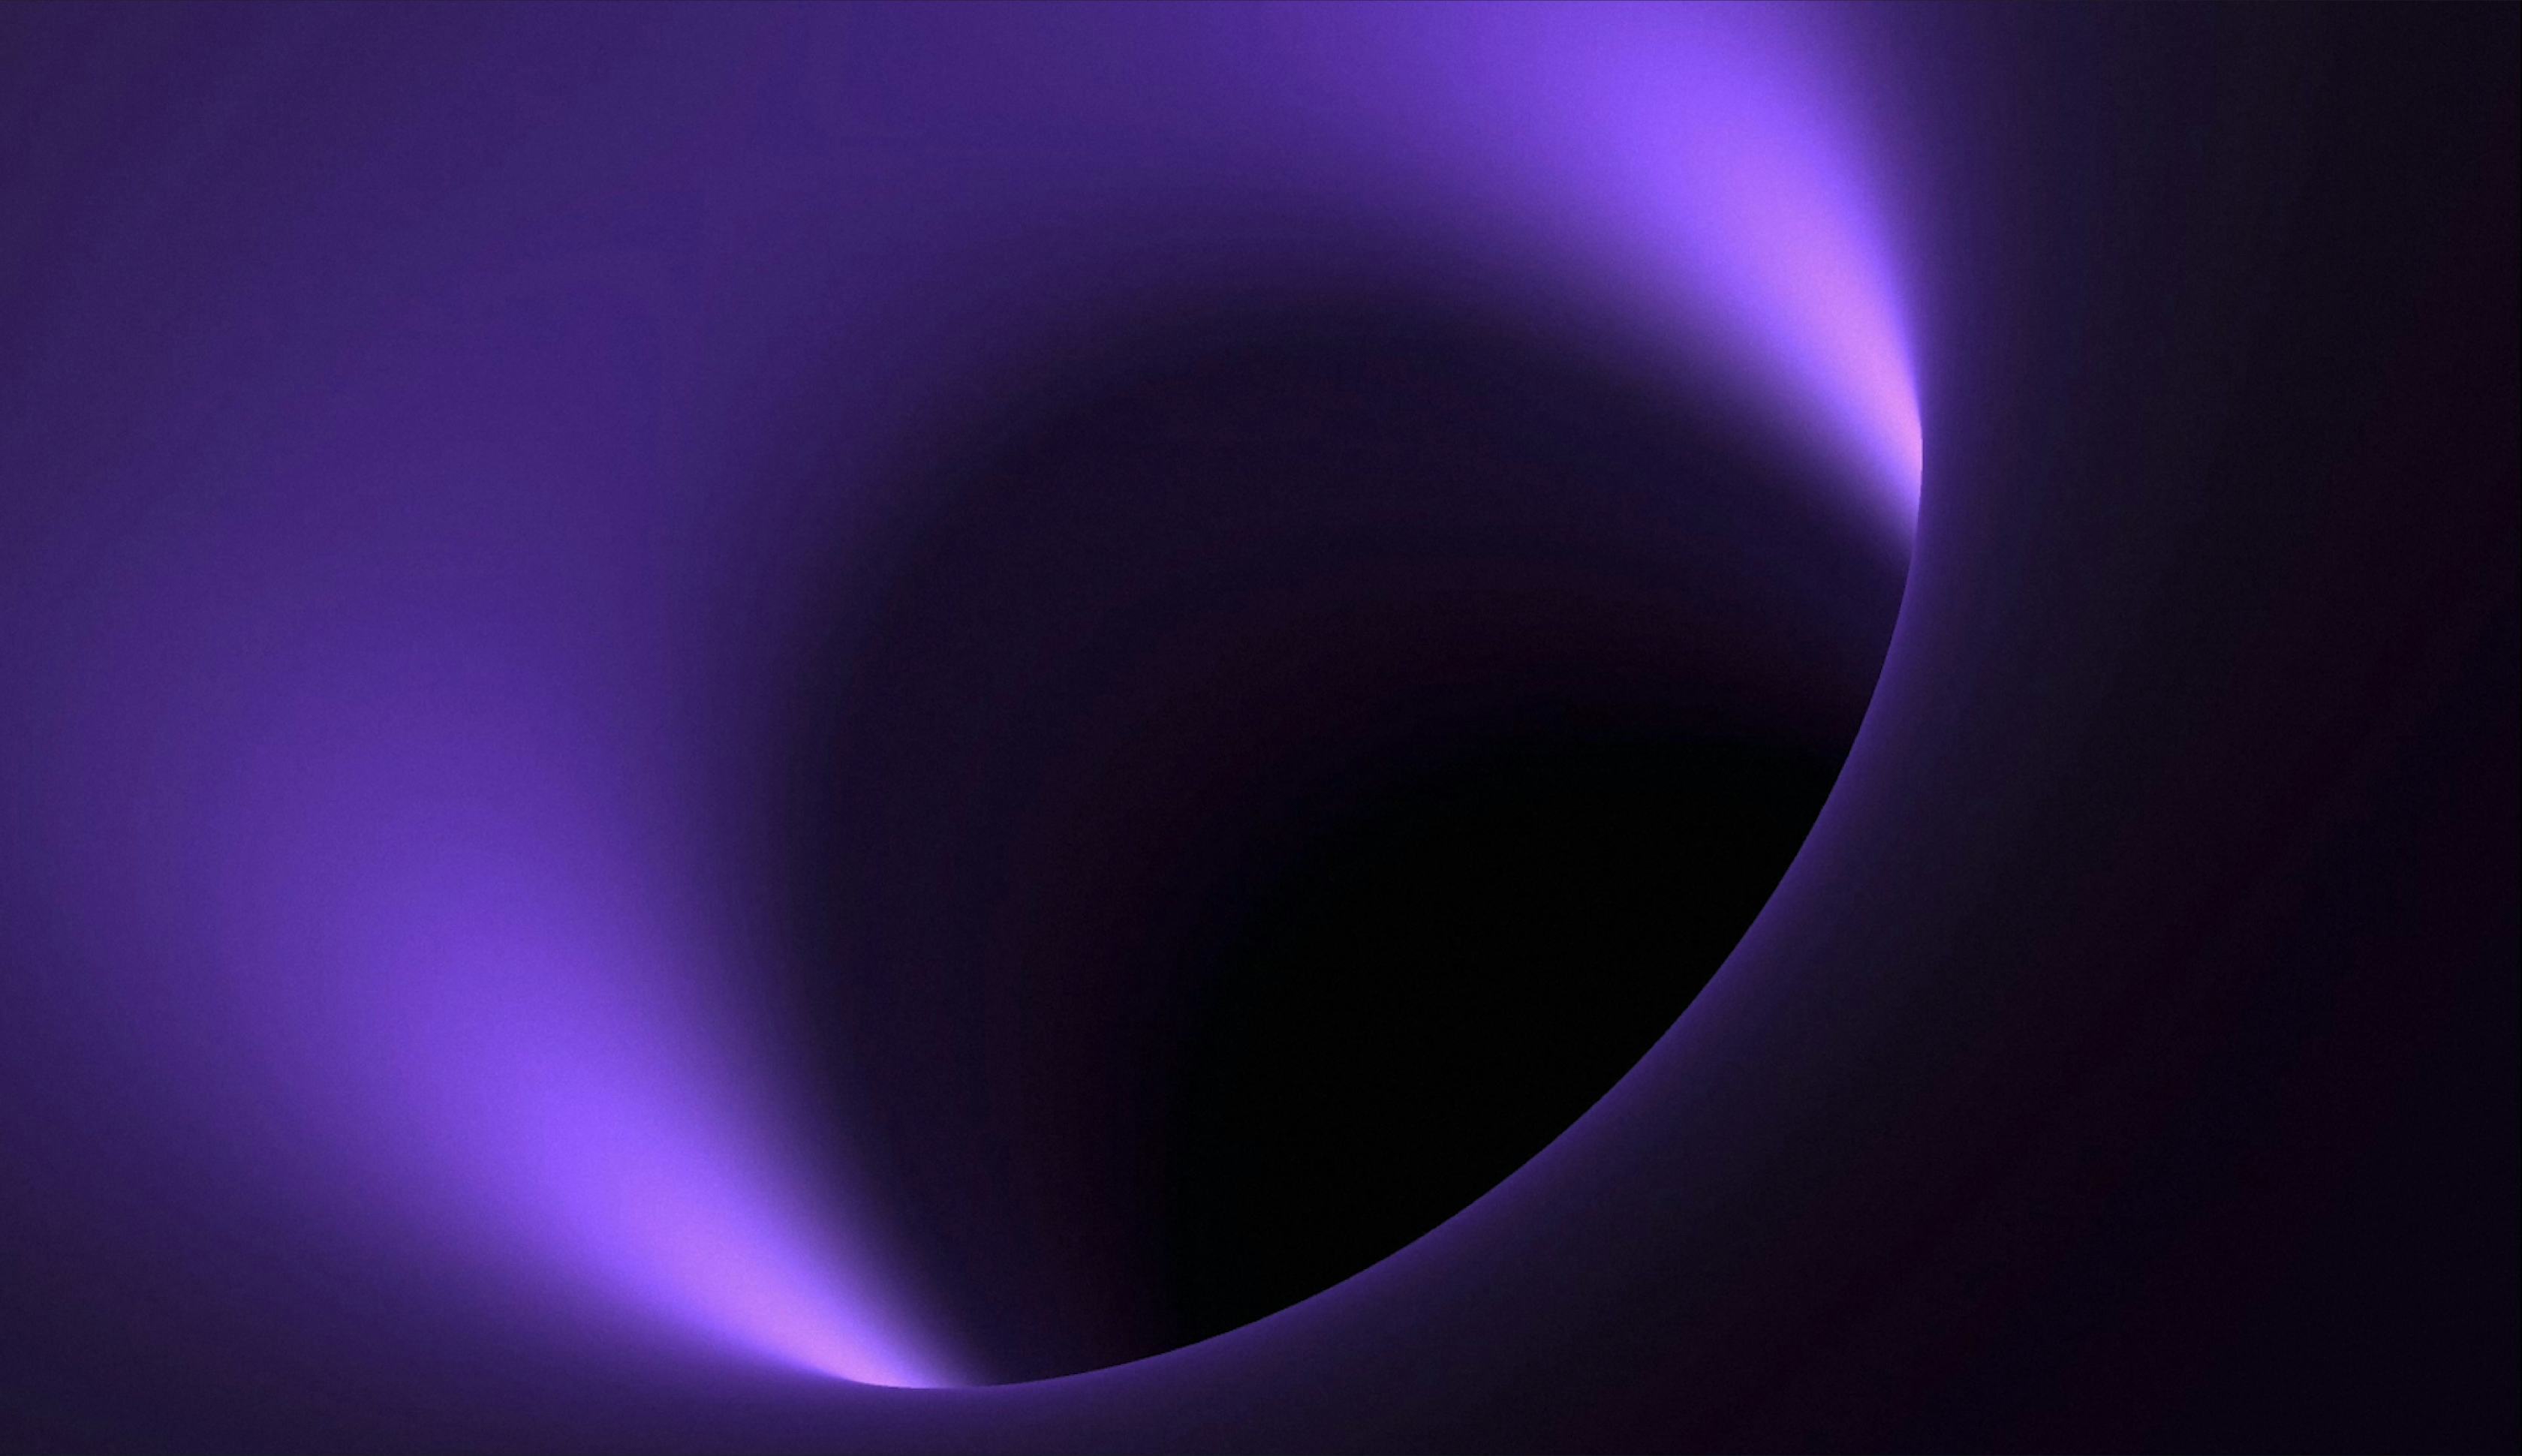 Black and purple black hole image